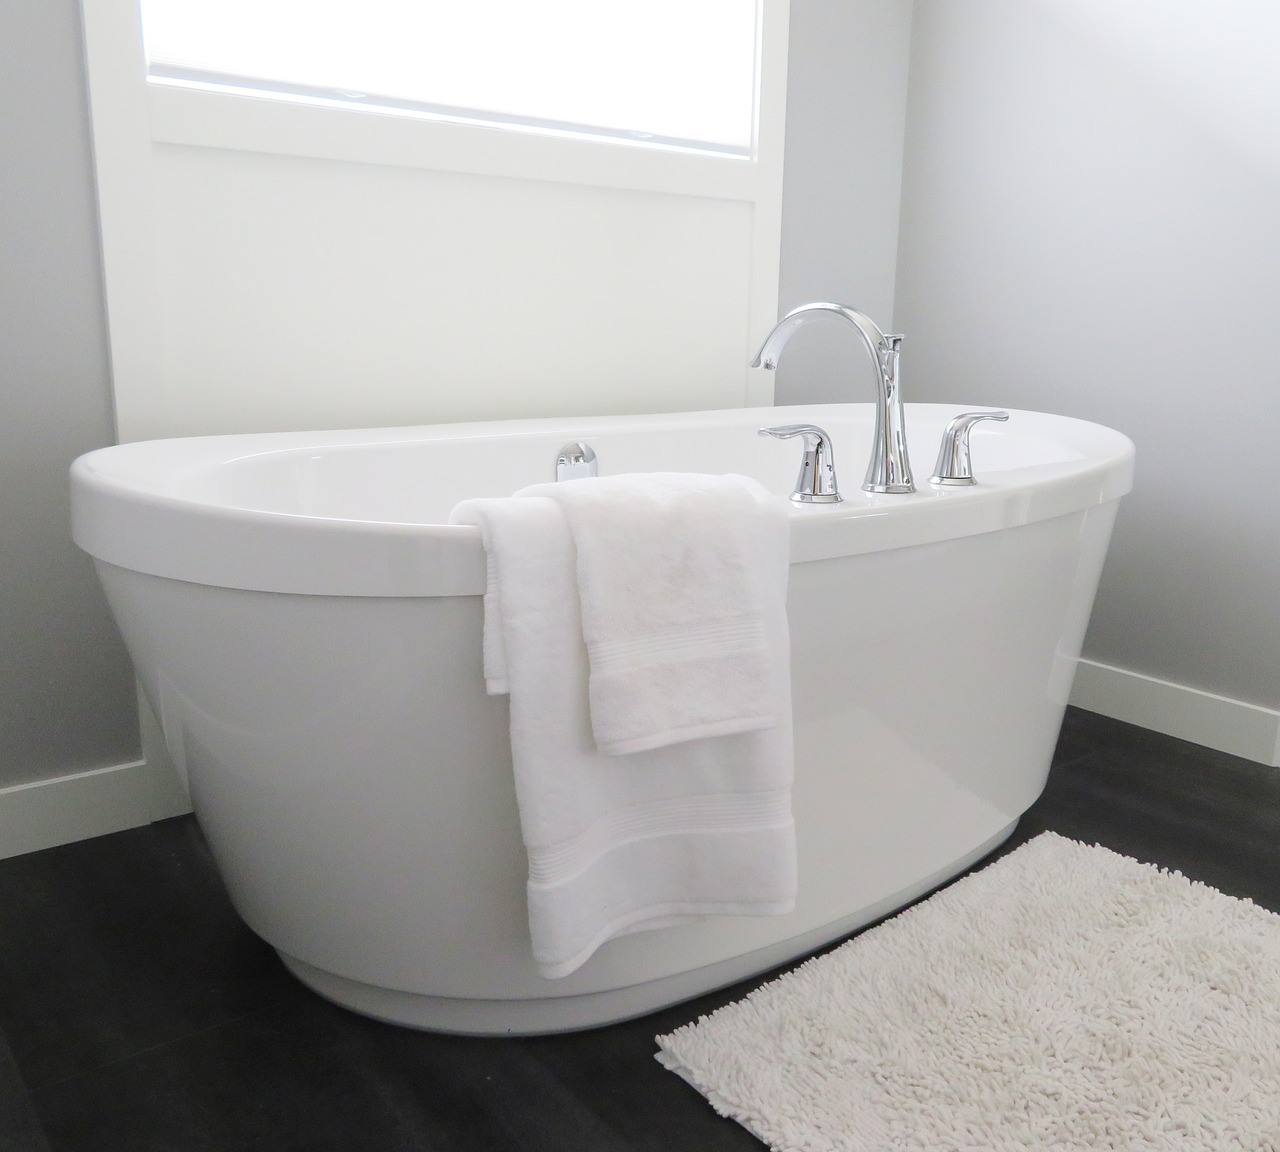 Things You Didn’t Know About Bathtub Reglazing |Tub Reglazing | Bathtub Refinishing | VT Lakewood Tub Reglazing